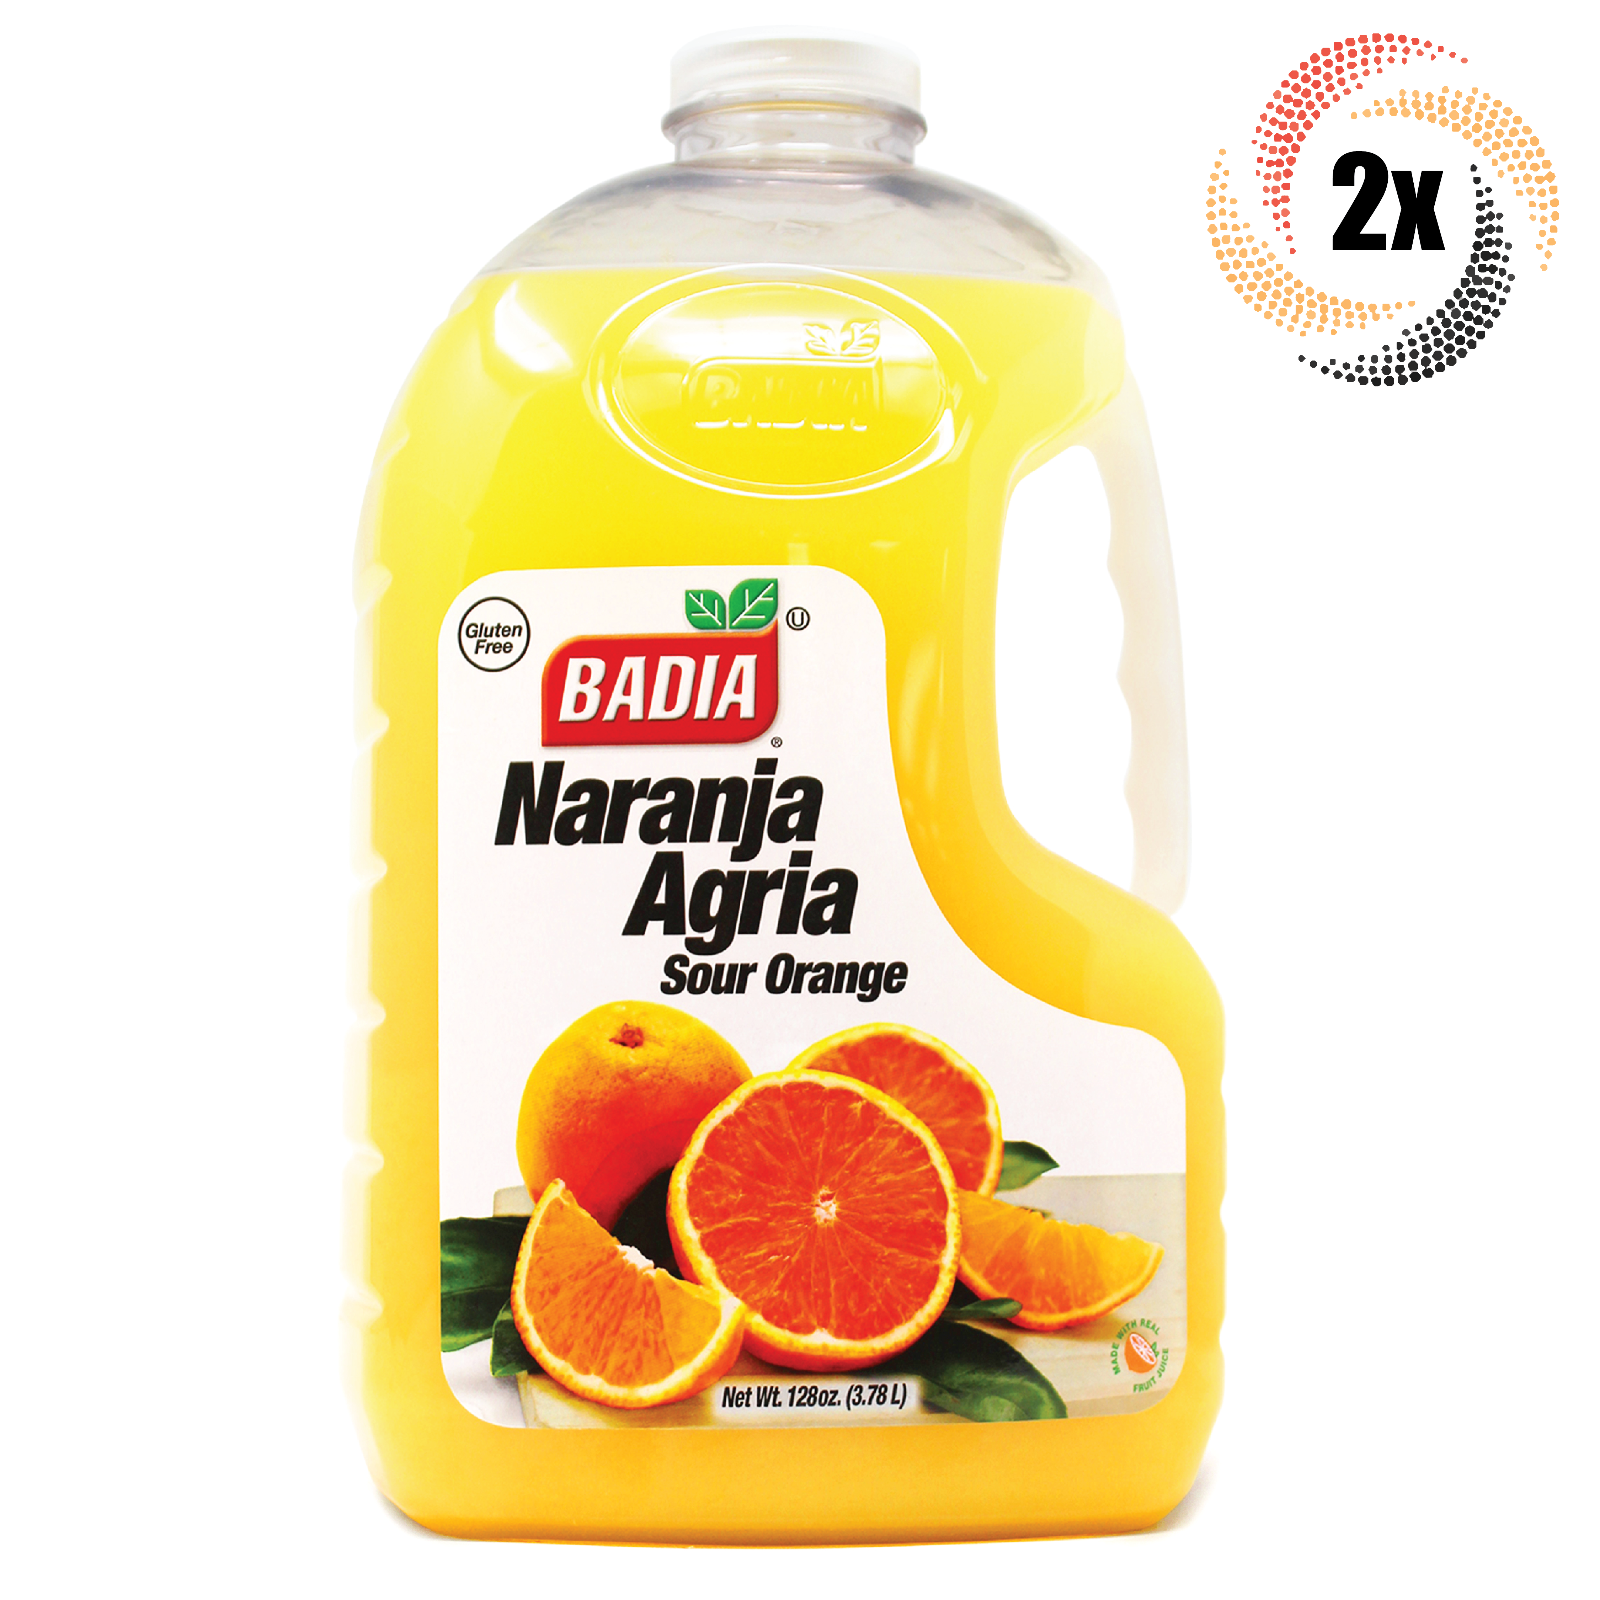 2x Bottles Badia Naranja Agria Sour Orange | 128oz | Gluten Free | Fast Shipping - $69.05